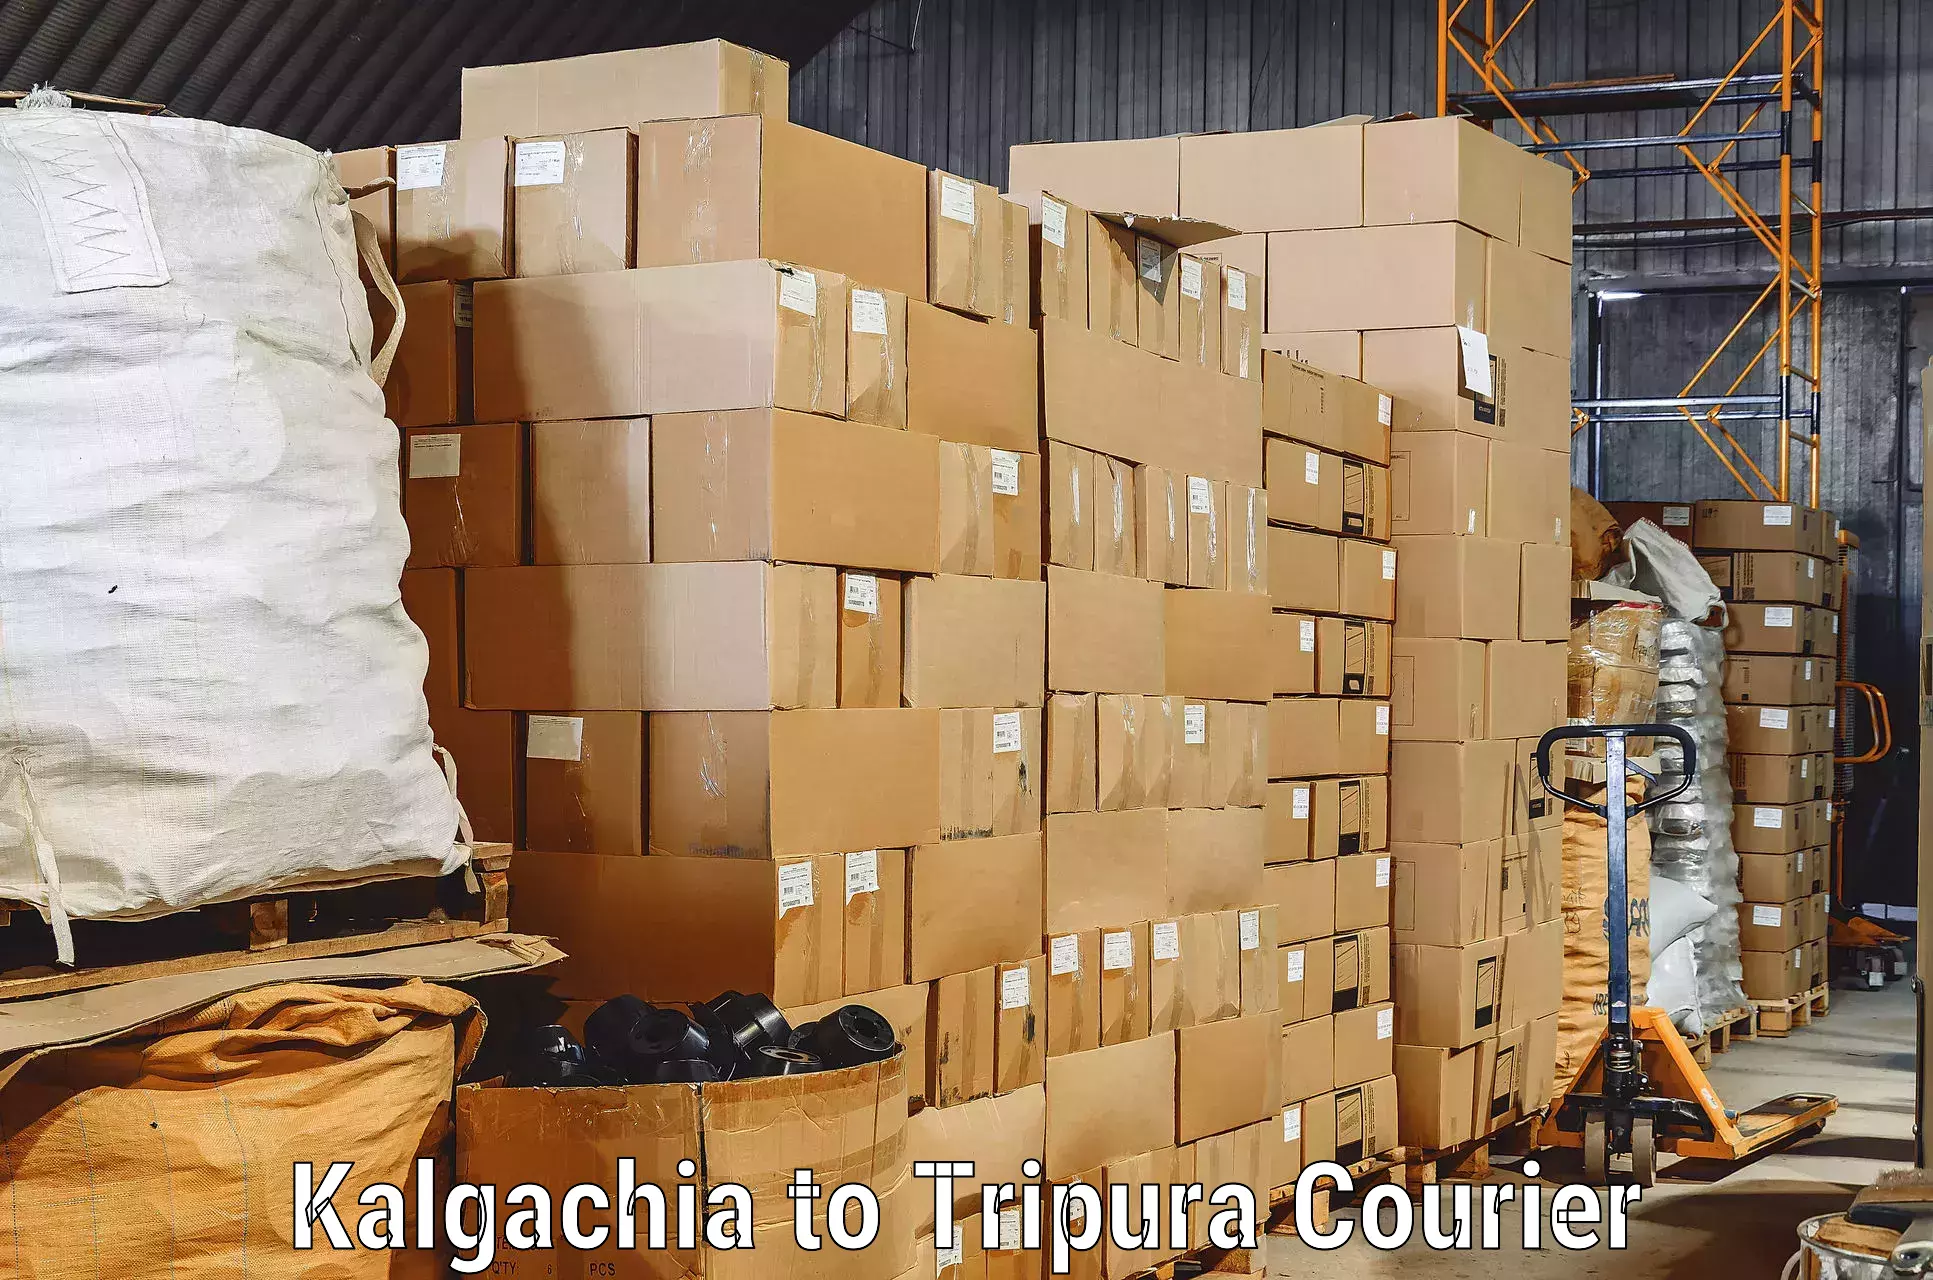 Professional relocation services Kalgachia to Khowai